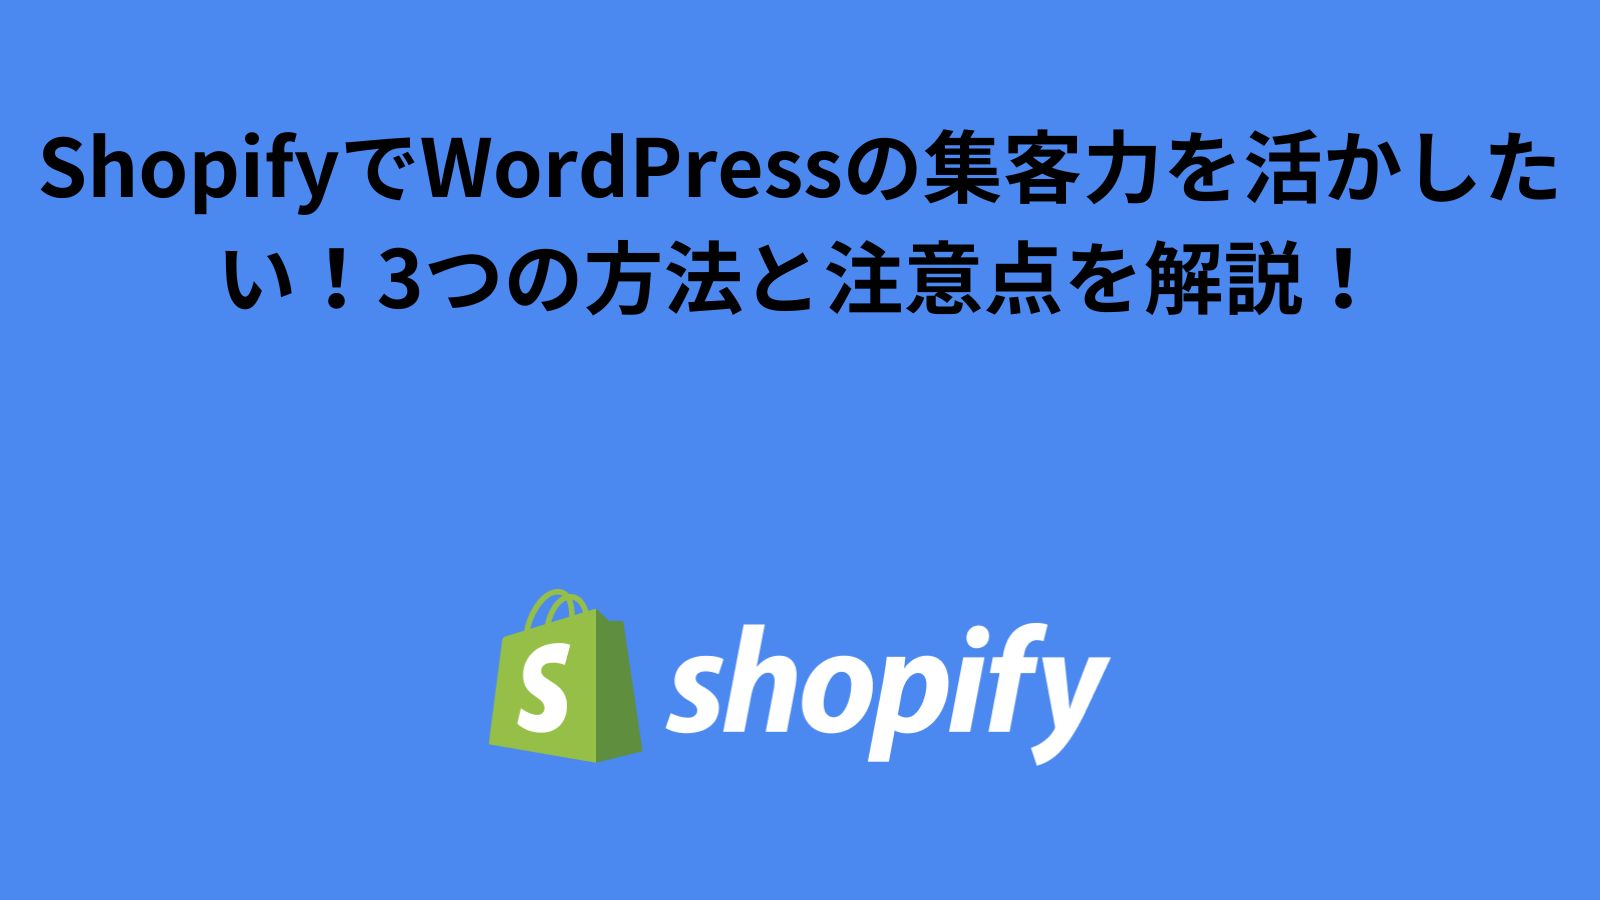 ShopifyでWordPressの集客力を活かしたい！記事移行における3つの方法と注意点を解説！